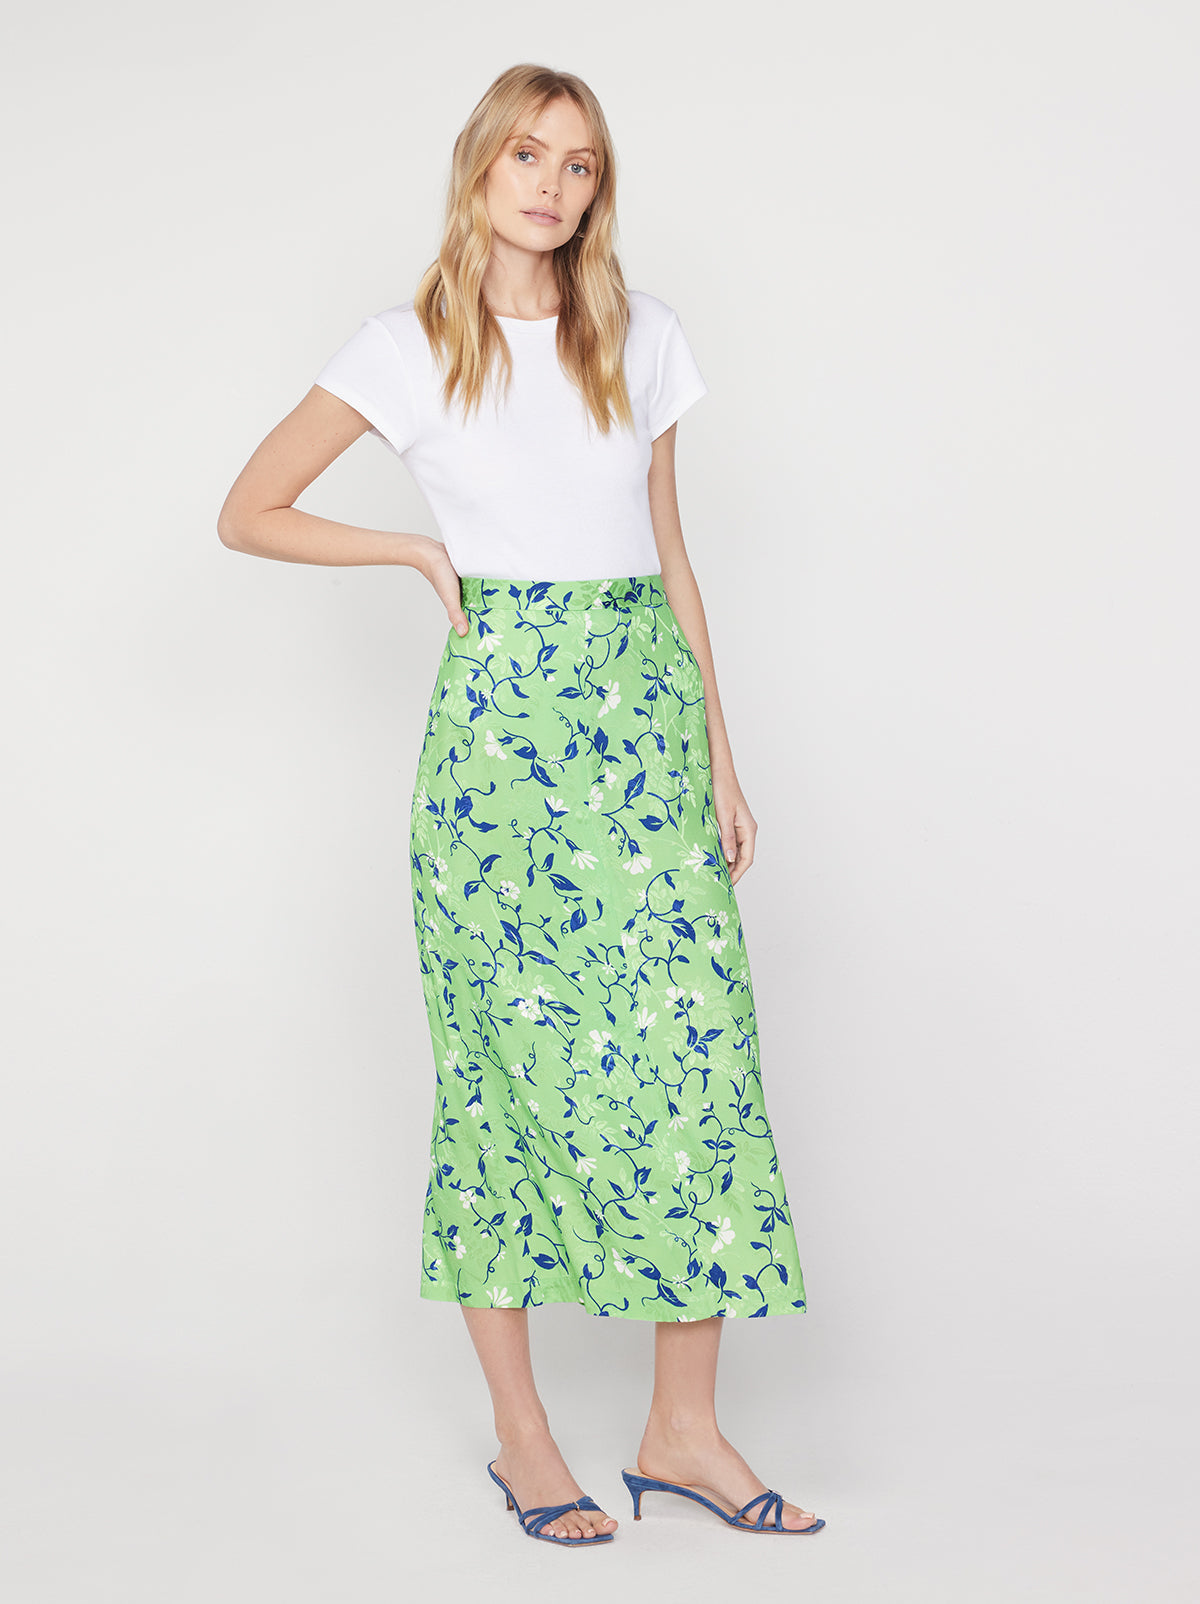 Laurel Green Vine Print Skirt | KITRI Studio